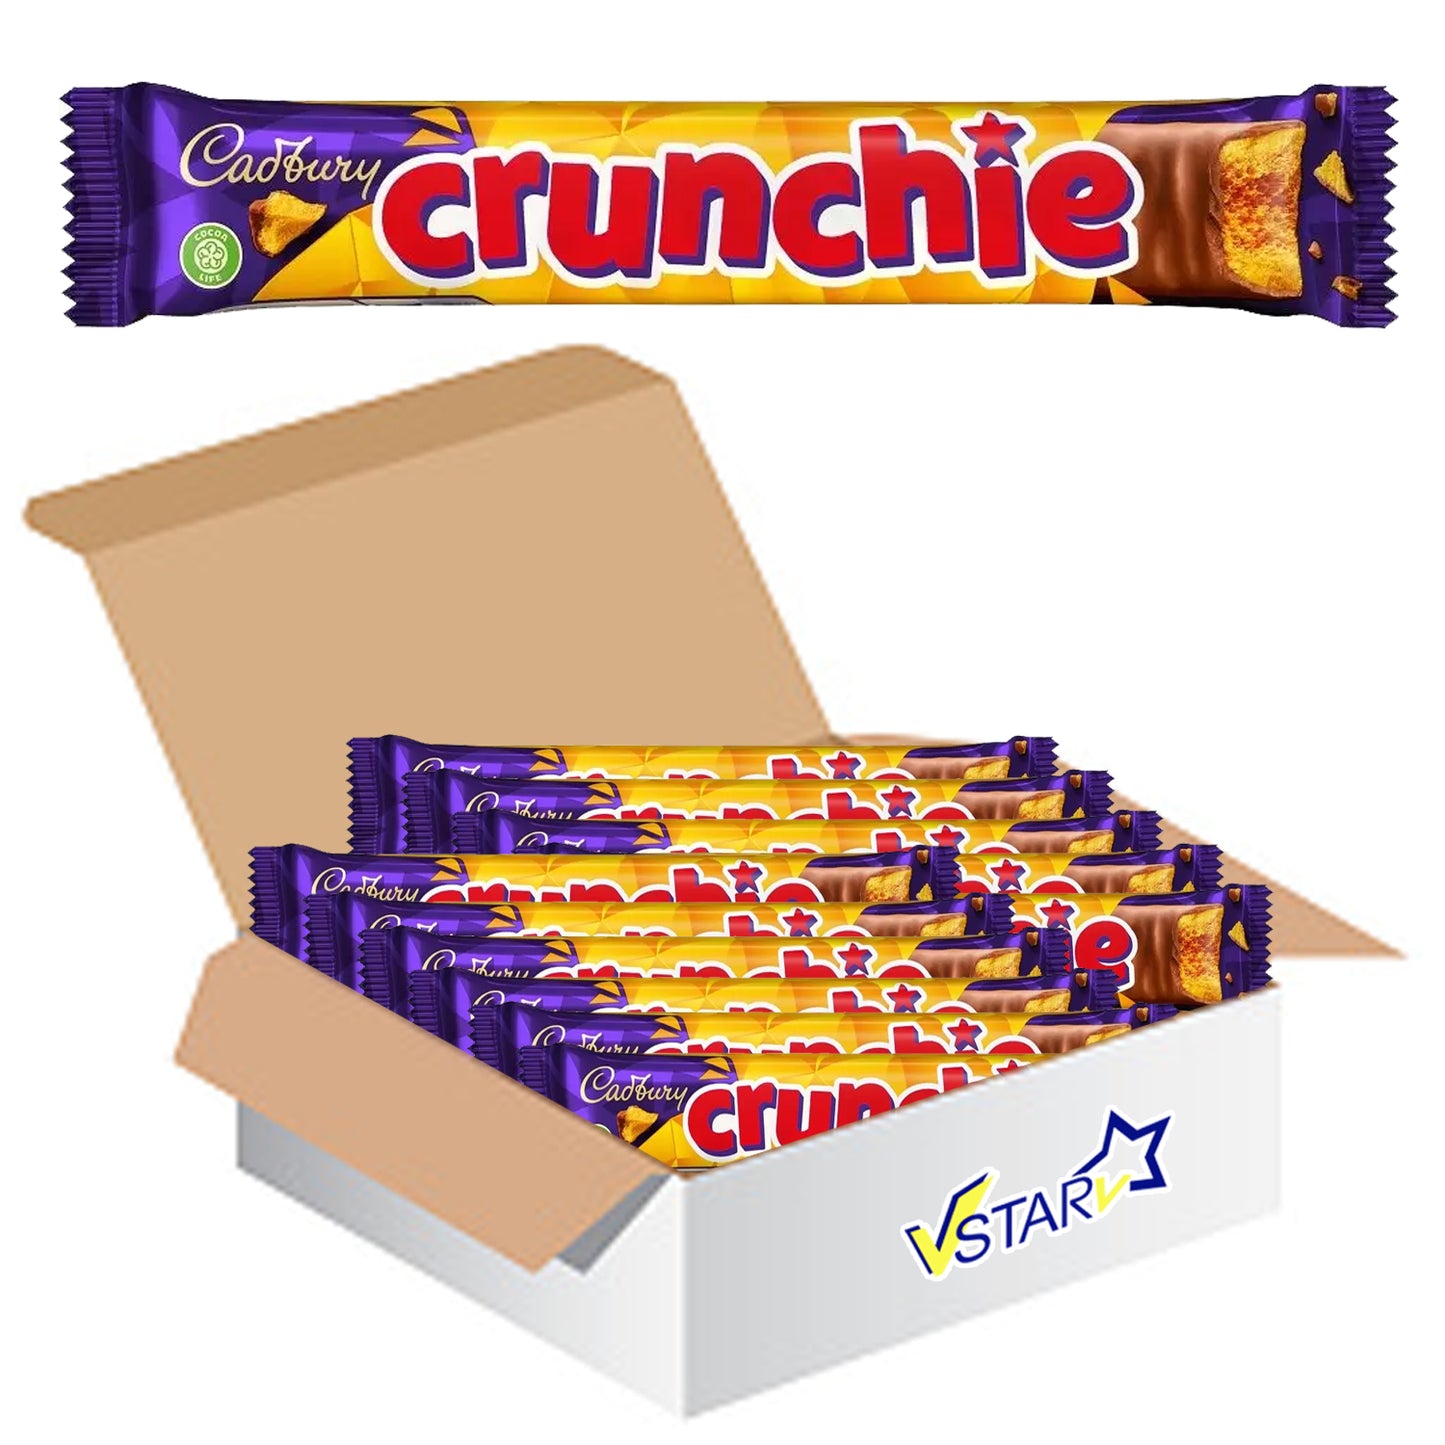 Cadbury Crunchie Chocolate Bar 48 x 40g - Full Box